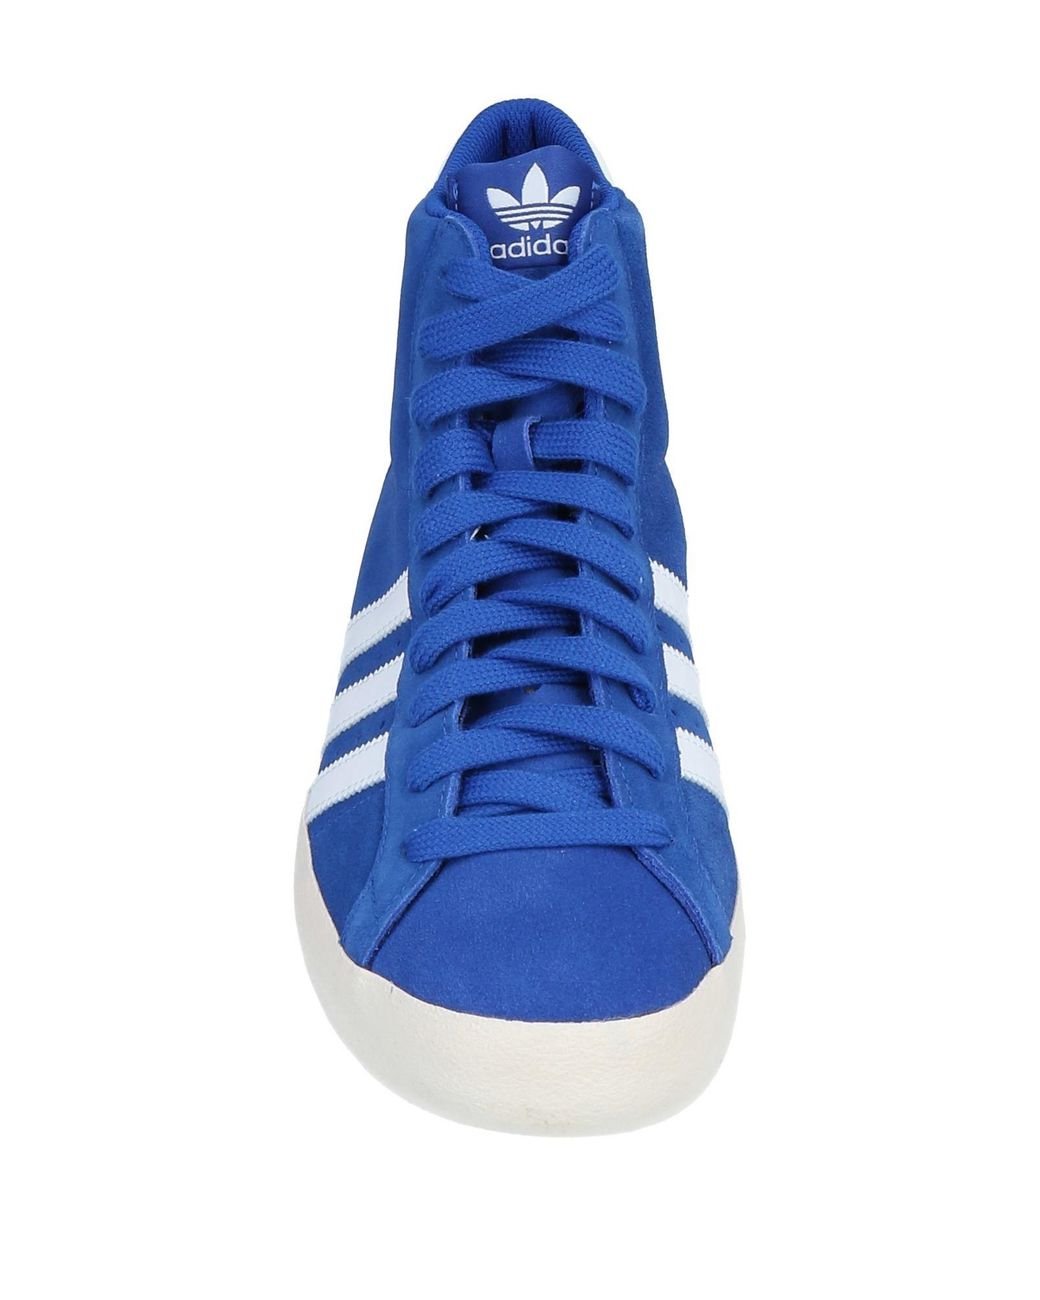 Blue adidas Originals Shoes | adidas Canada